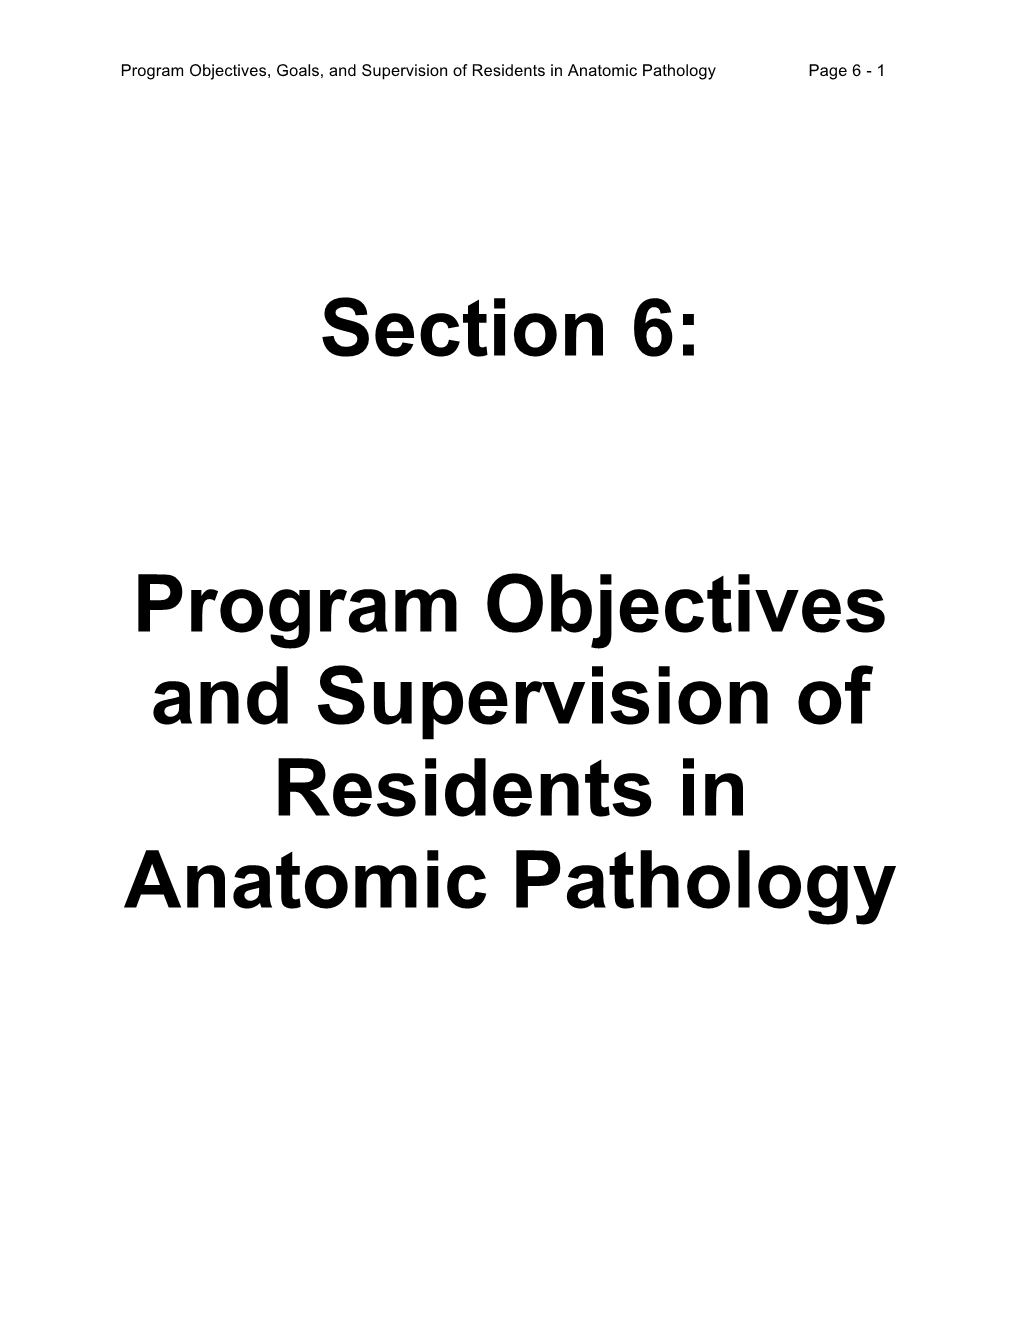 Program Objectives for Anatomic Pathology